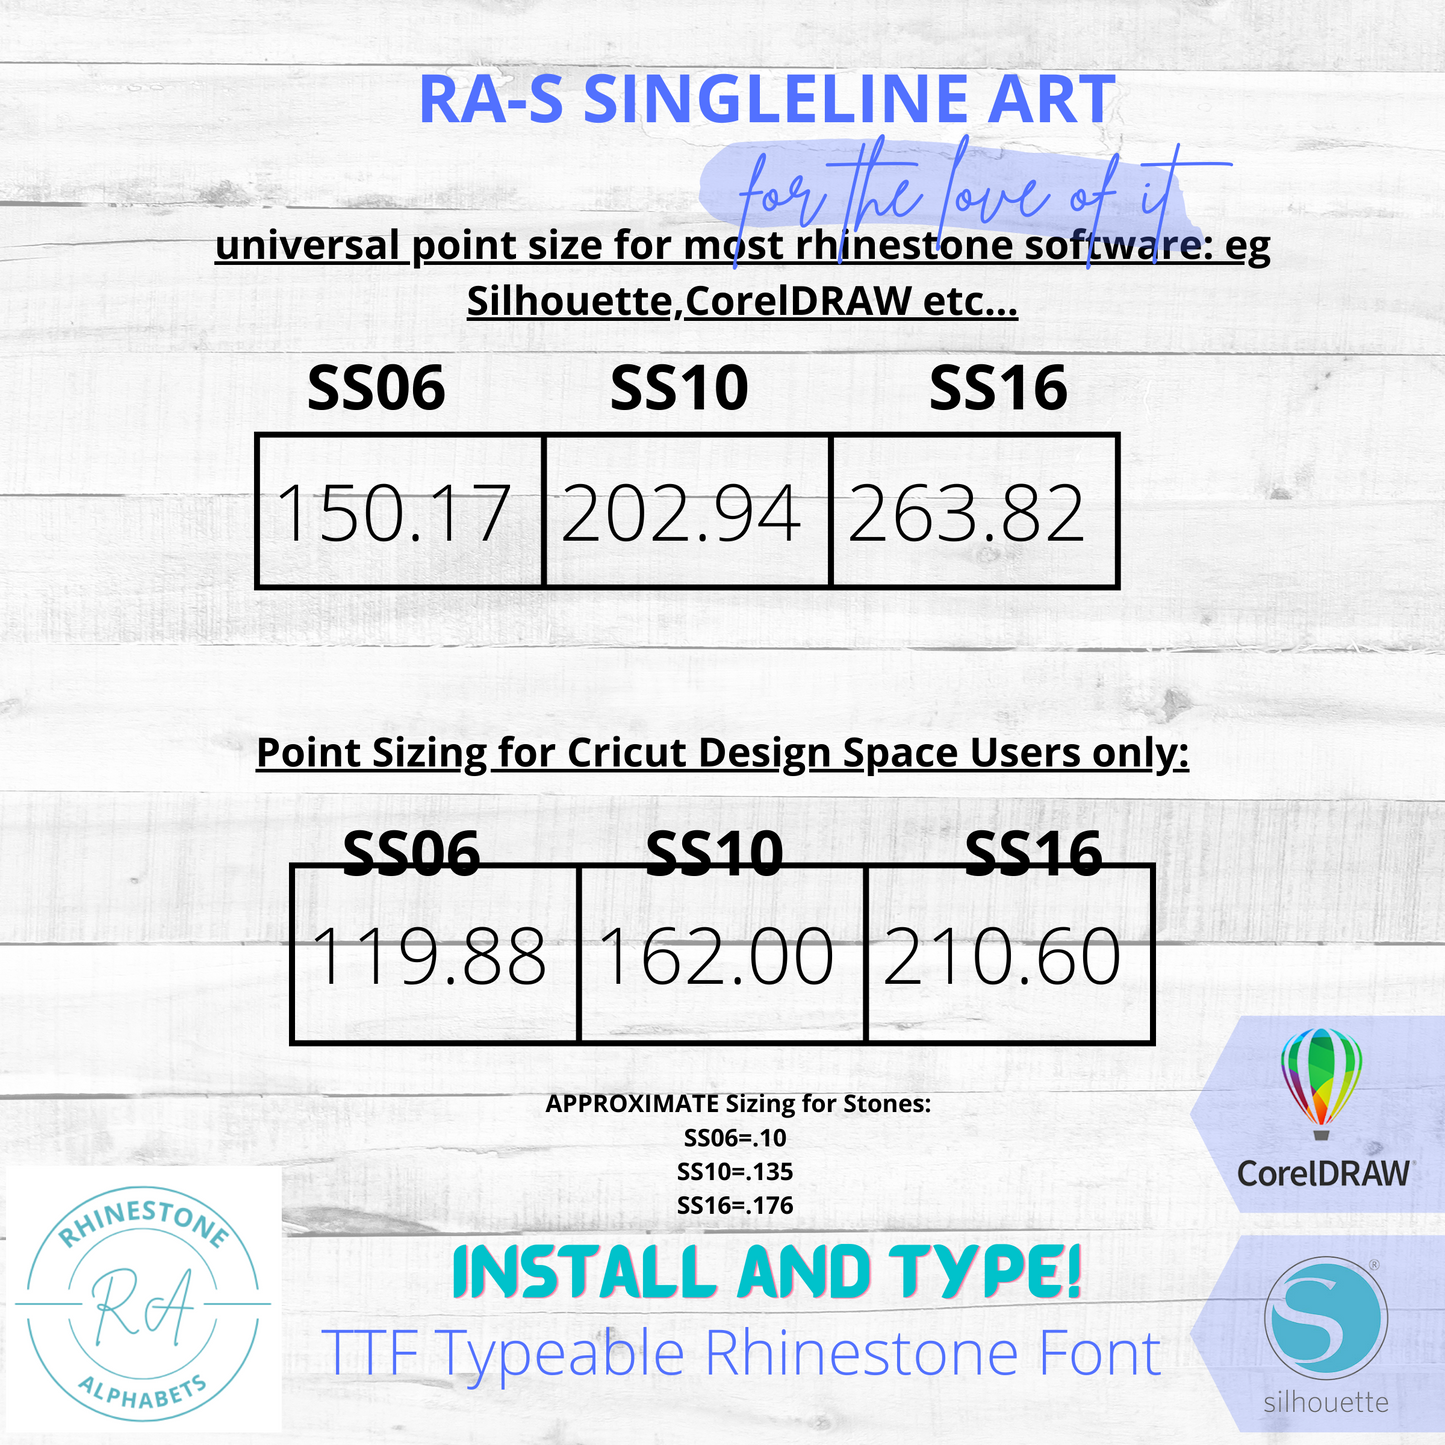 RA-S Singleline Art